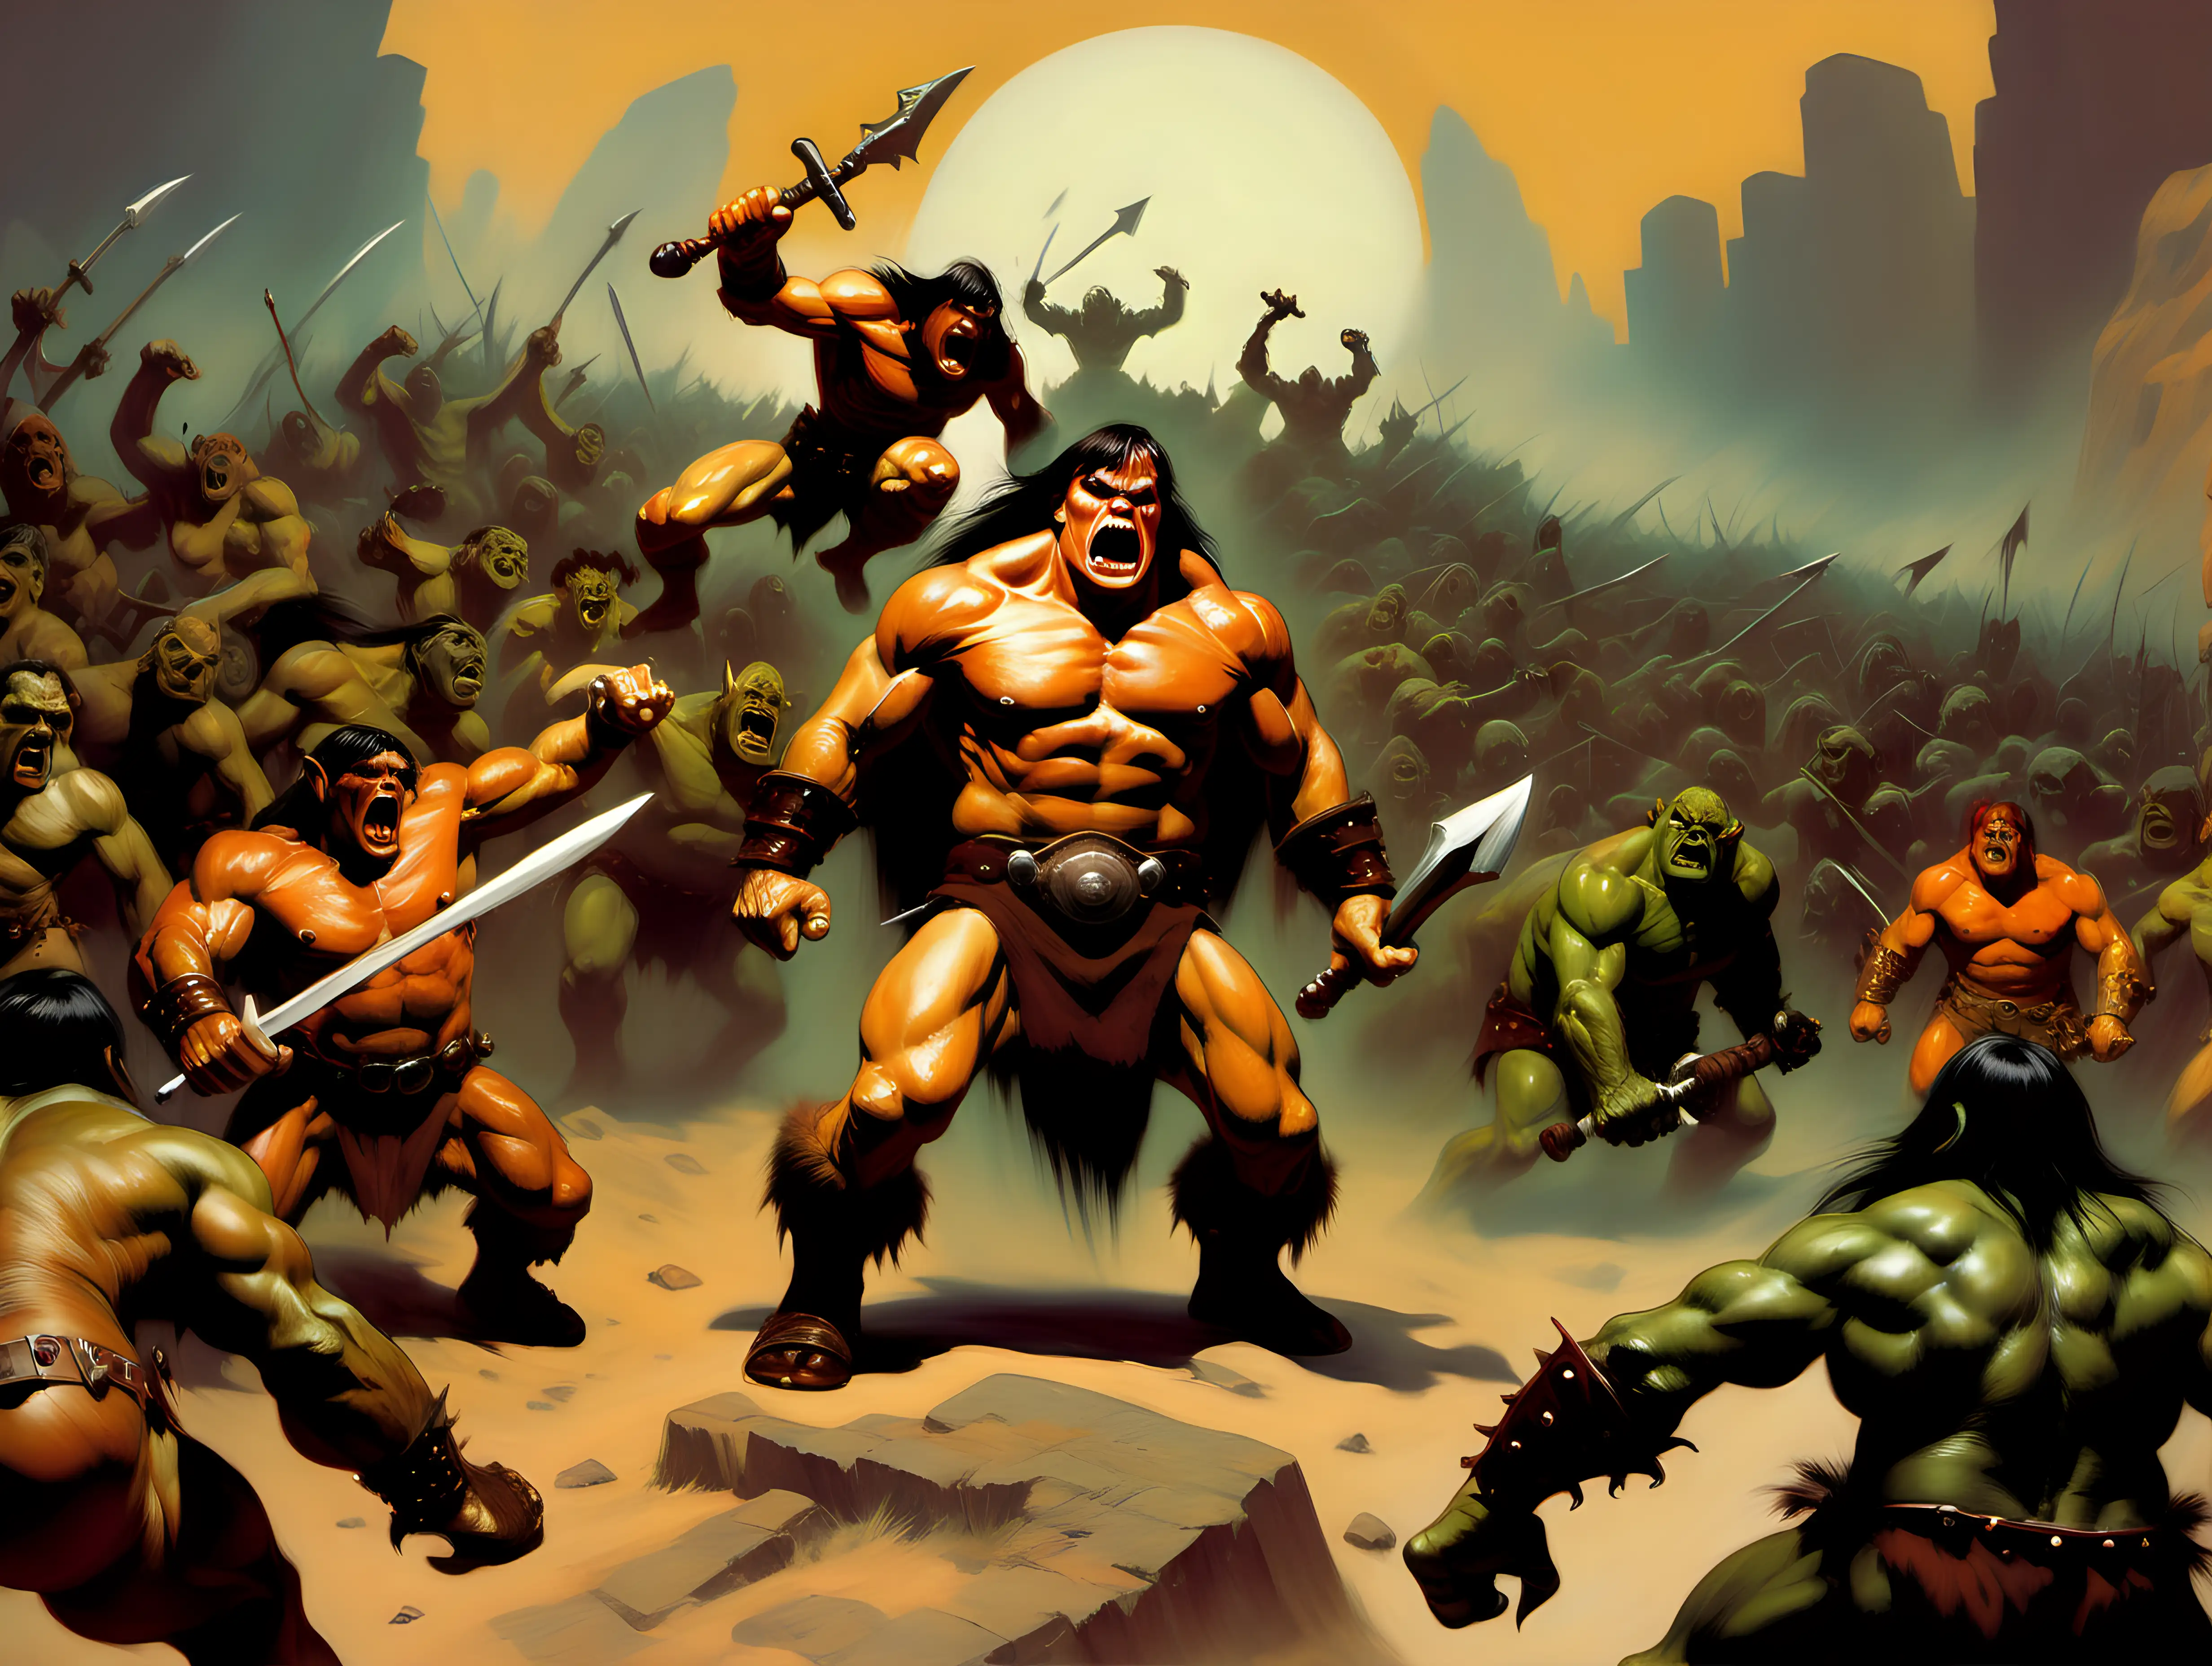 Conan vs a horde of ogers Frank Frazette style